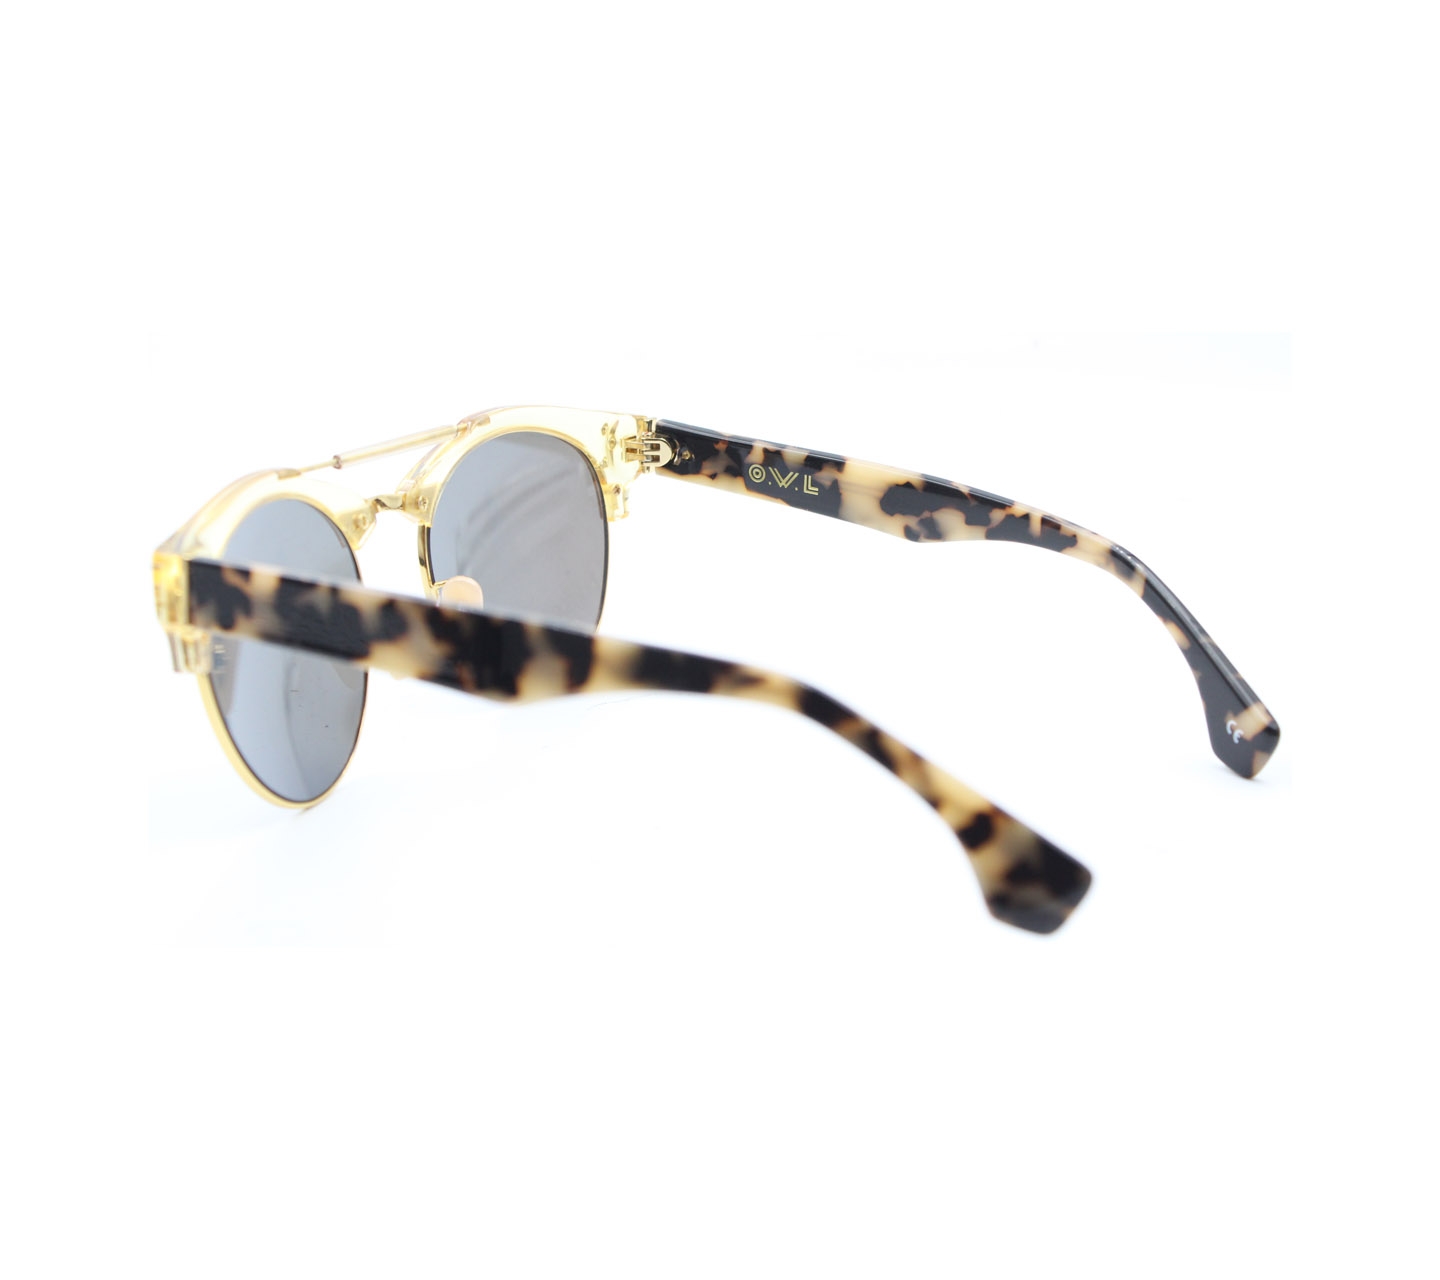 O.W.L Black & Cream Sunglasses